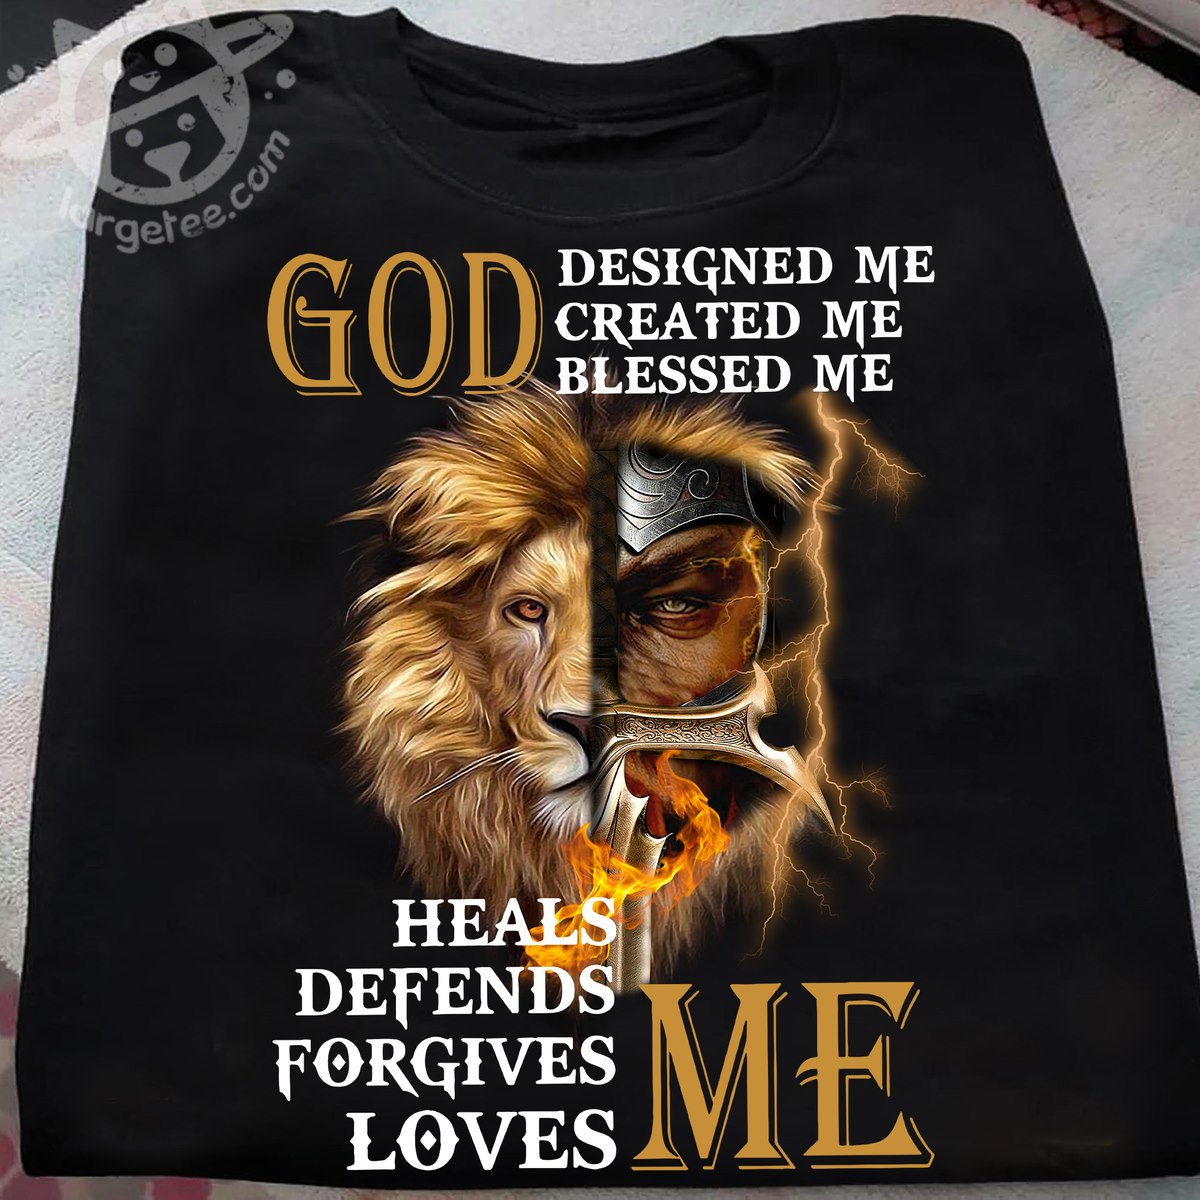 God designed me created me blessed me heals defends forgives loves me - Lion and god